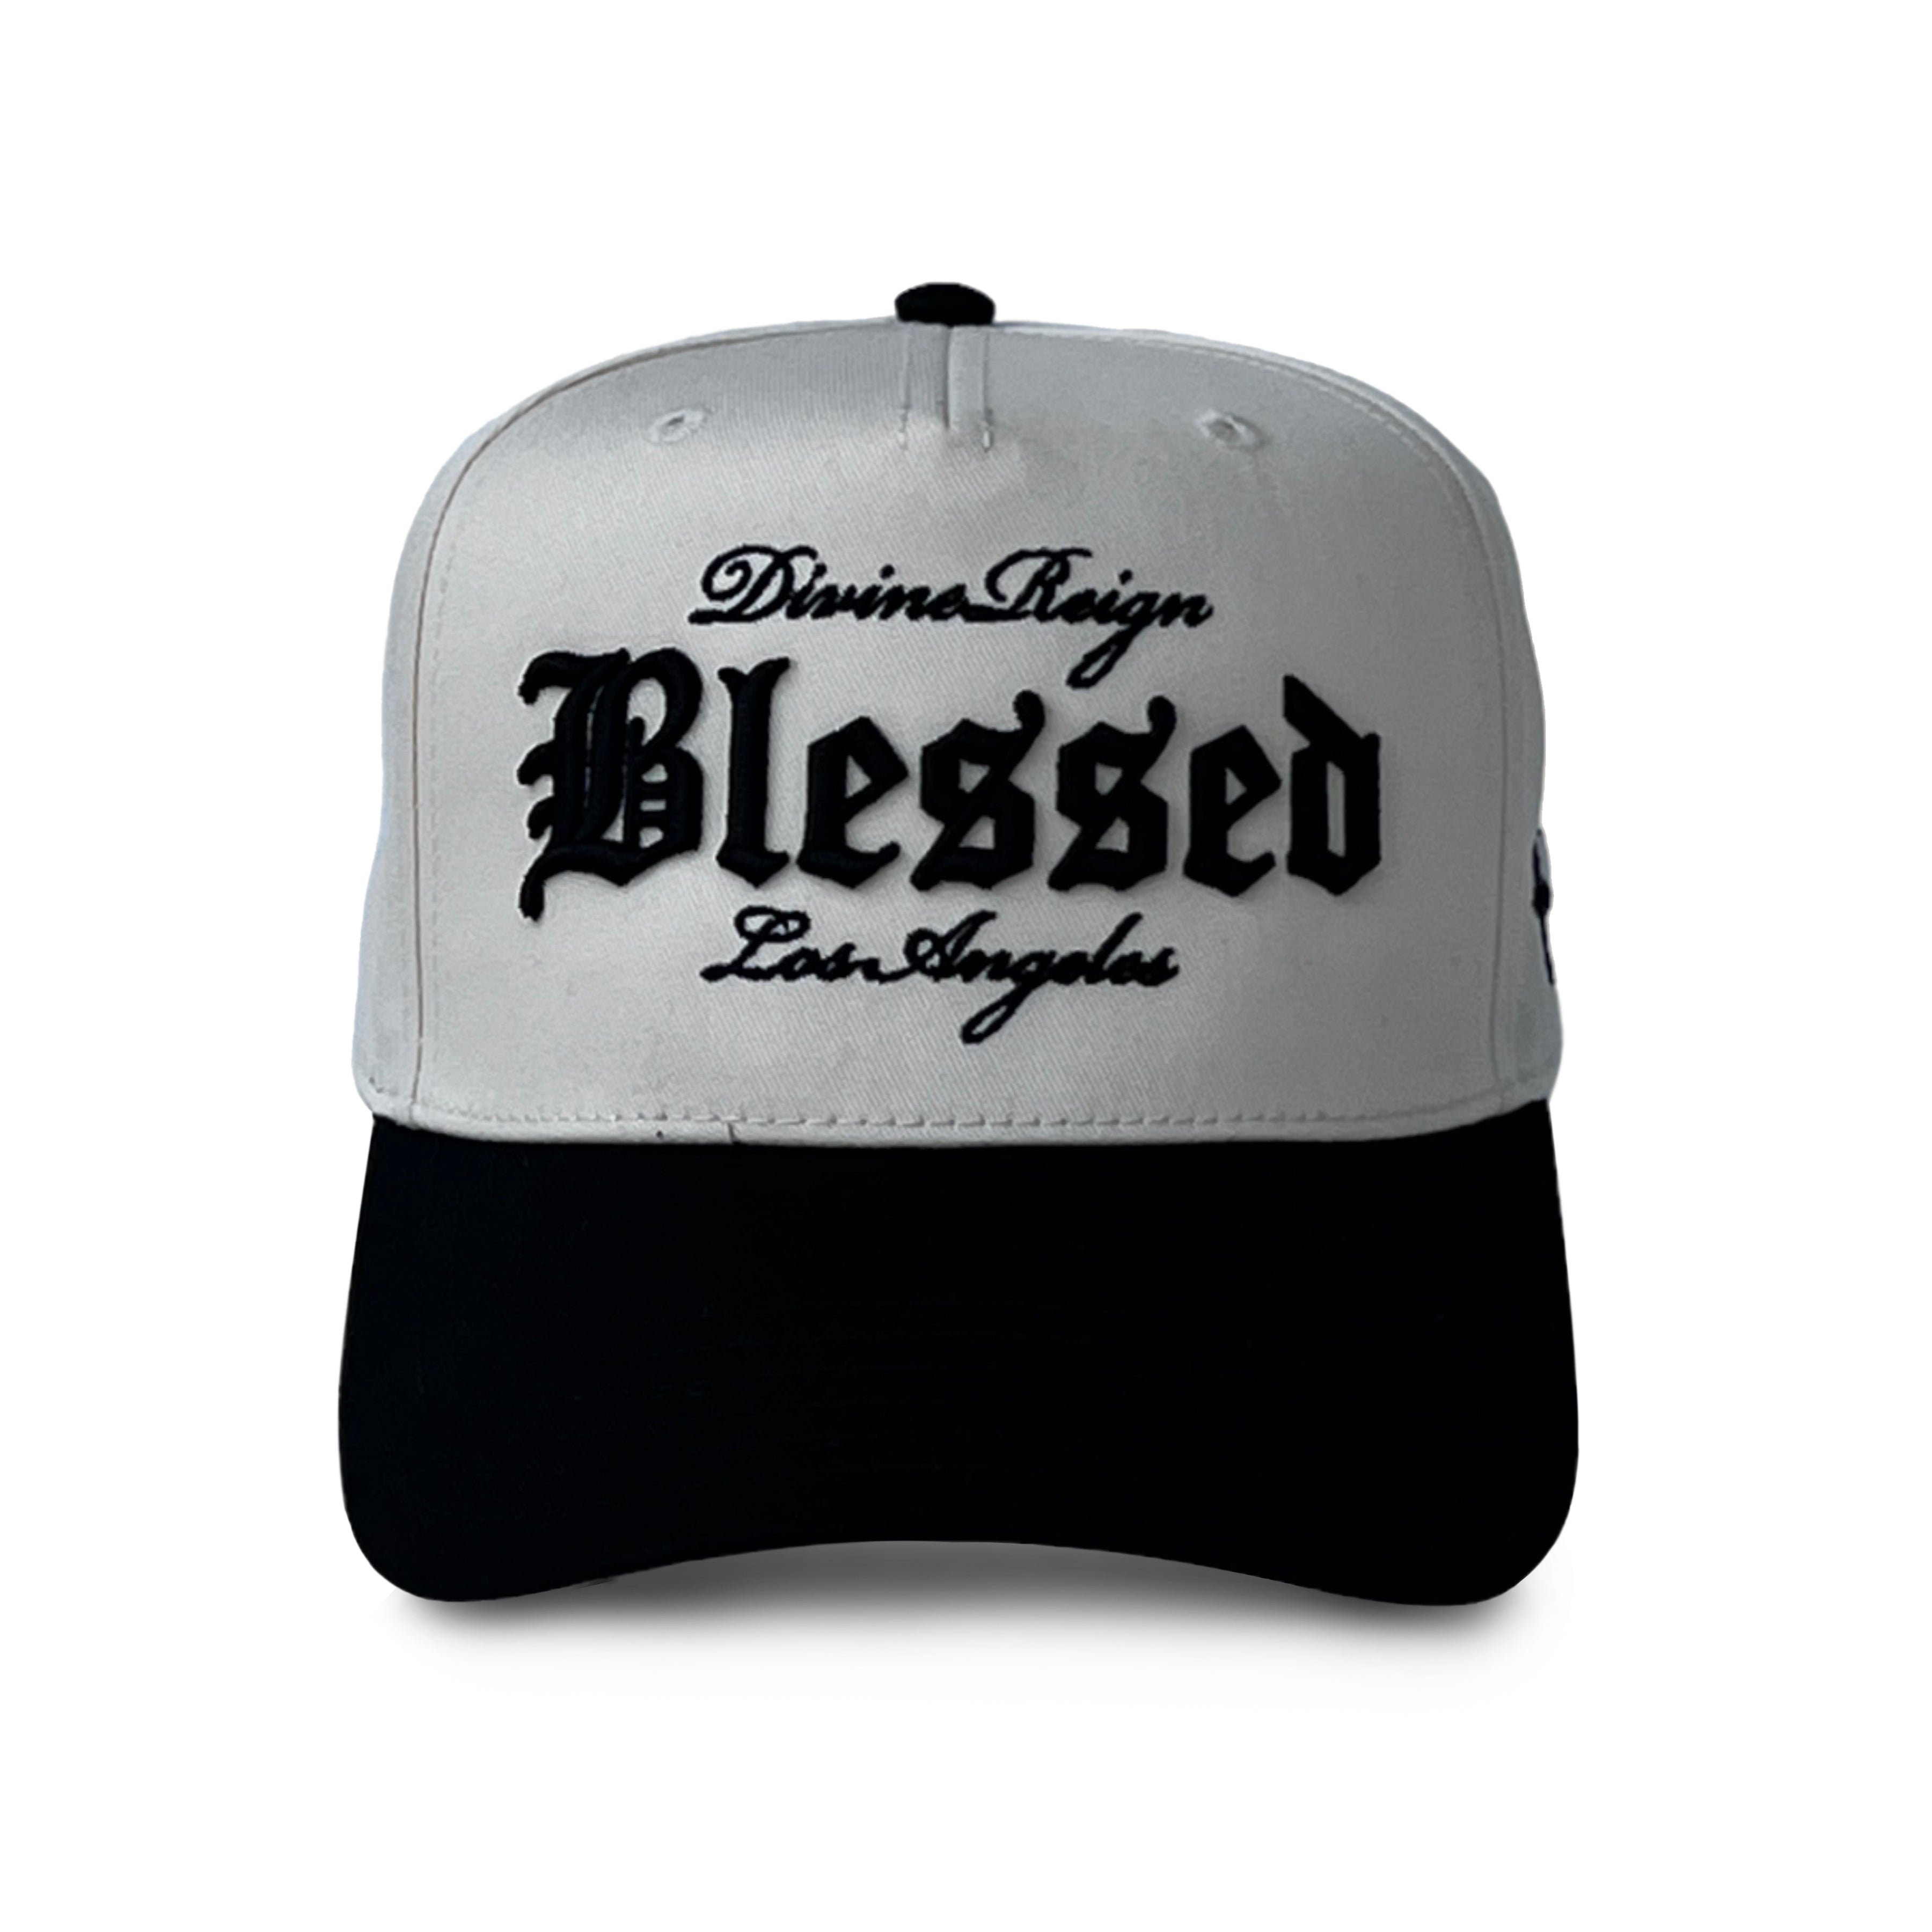 Blessed Hat - Cream/Black